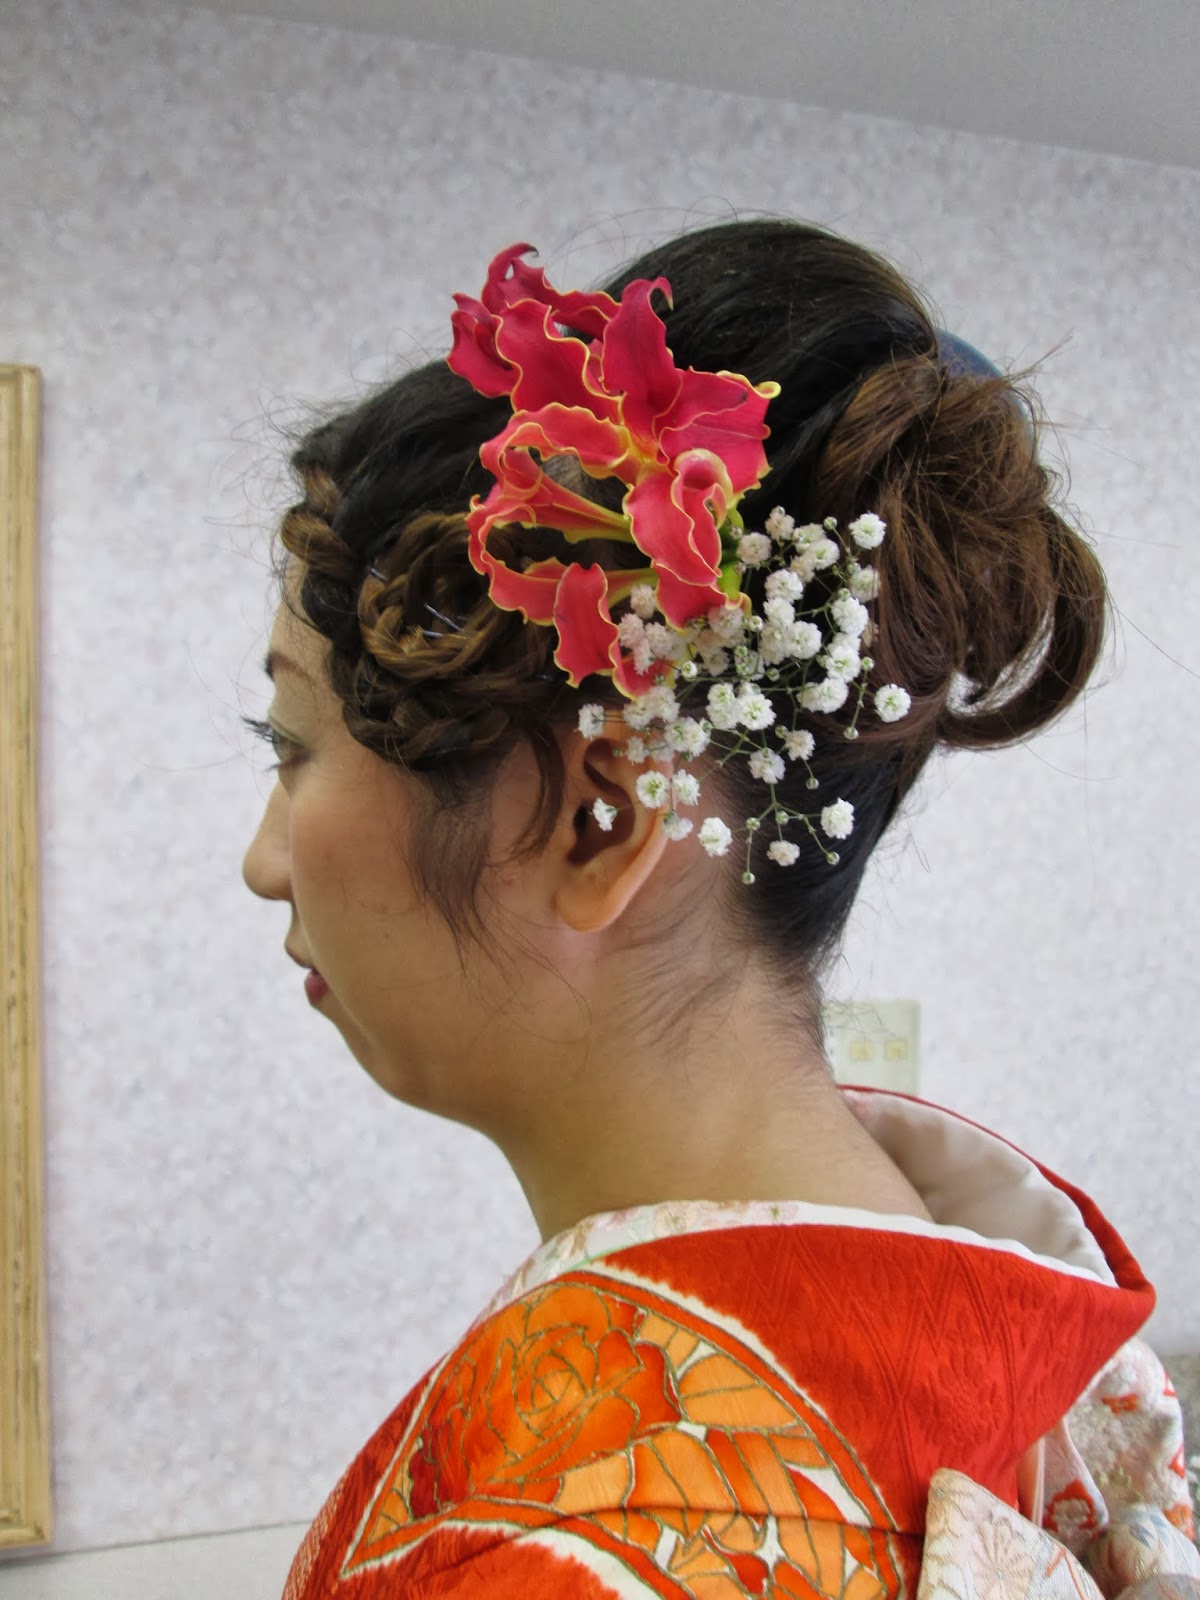 Paphioのつぶやき 成人式は 生花の髪飾りで 美しさを最大限に引き出します